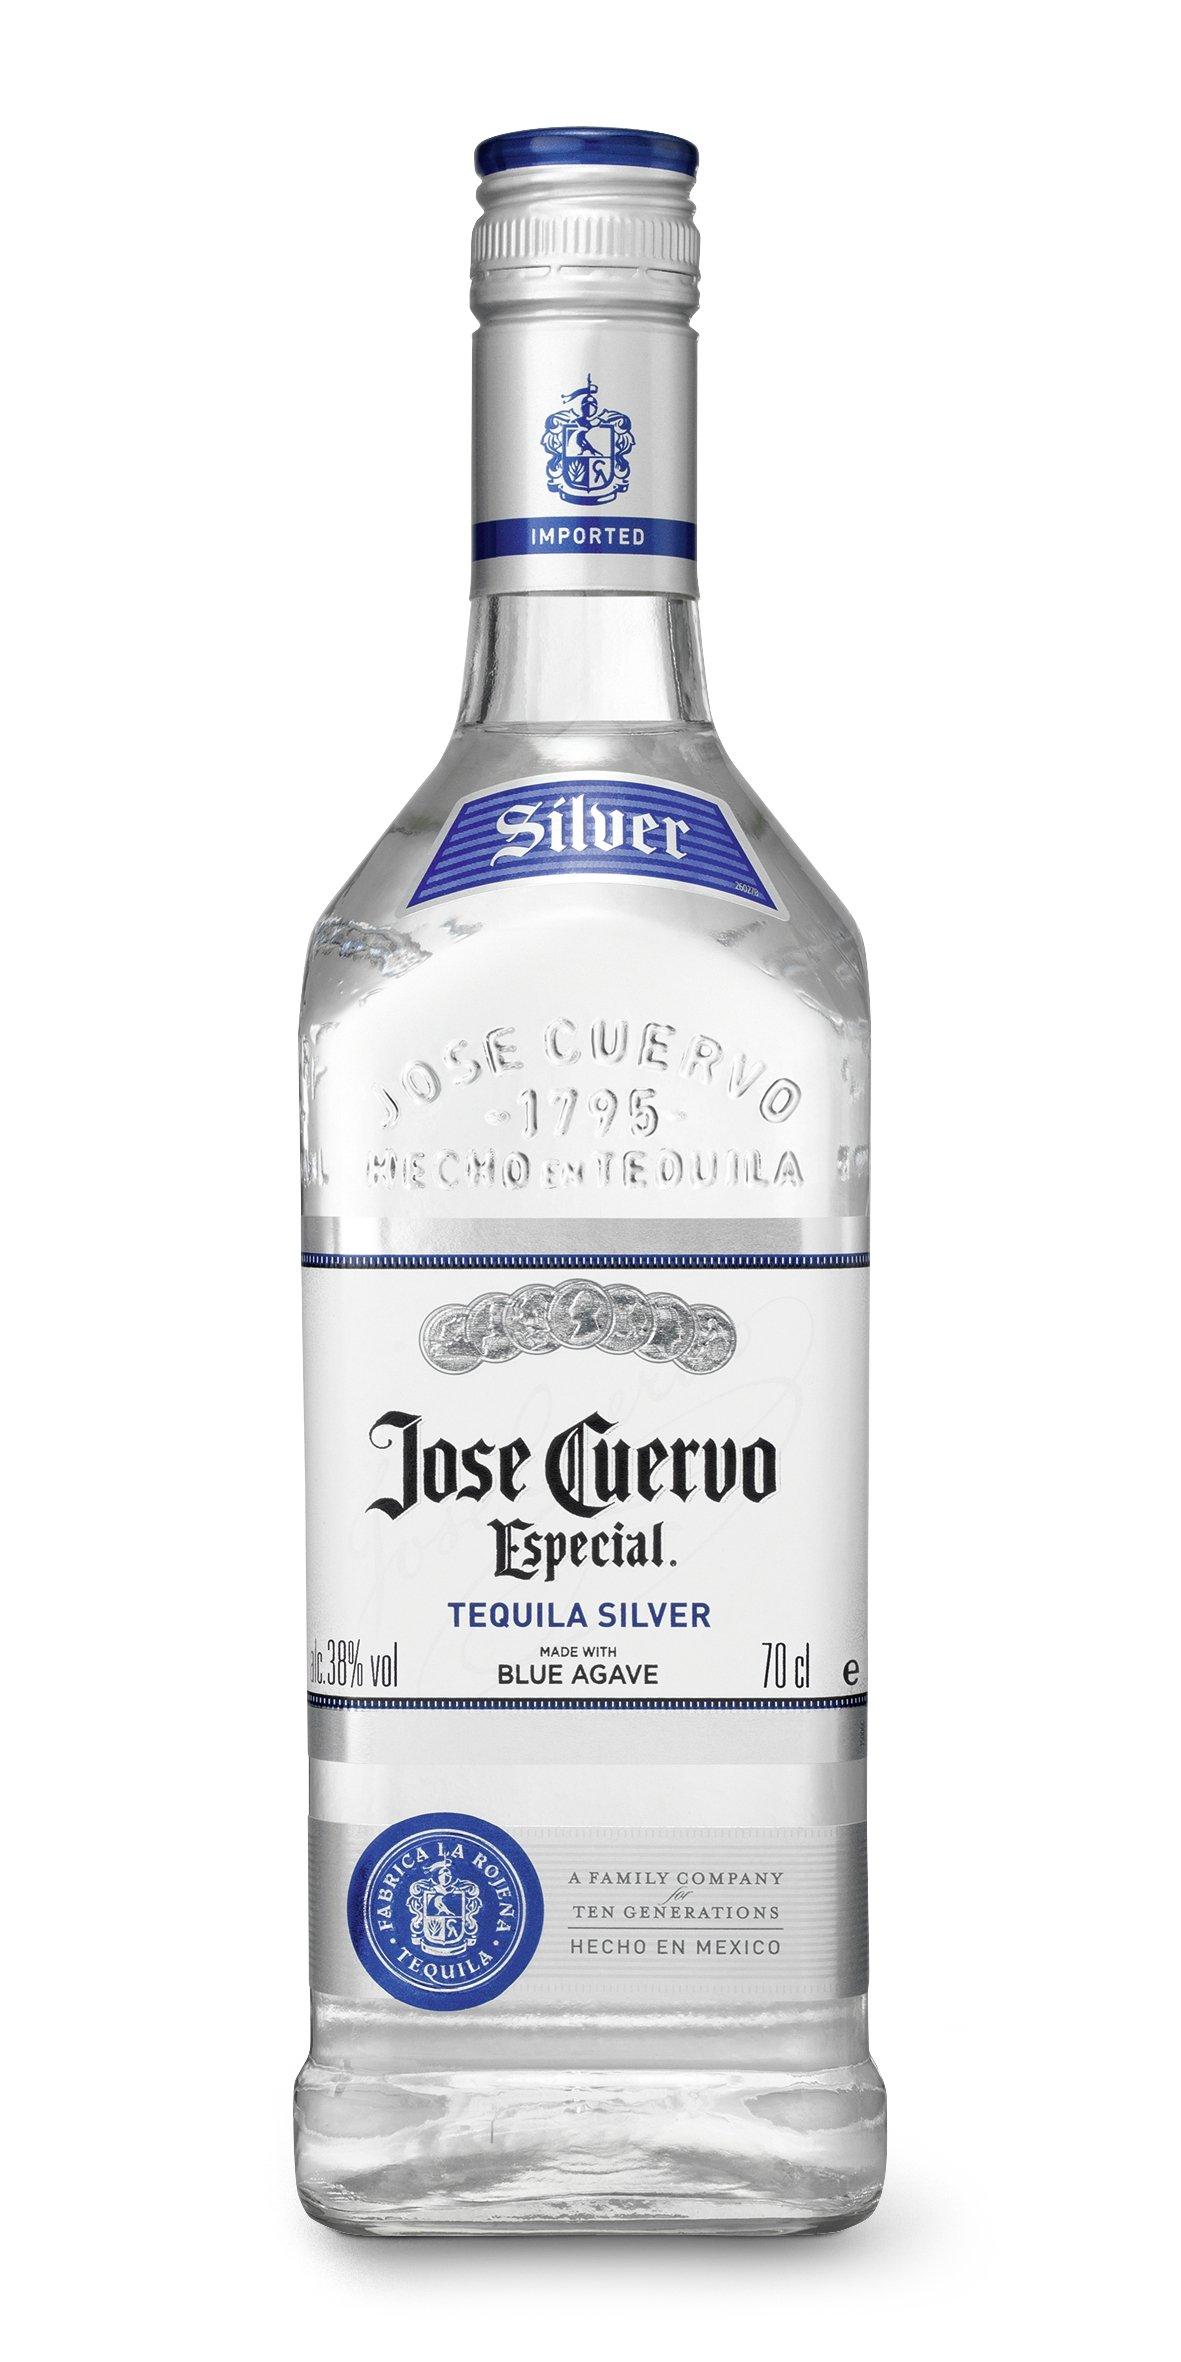 Jose Cuervo Especial Tequila Silver  